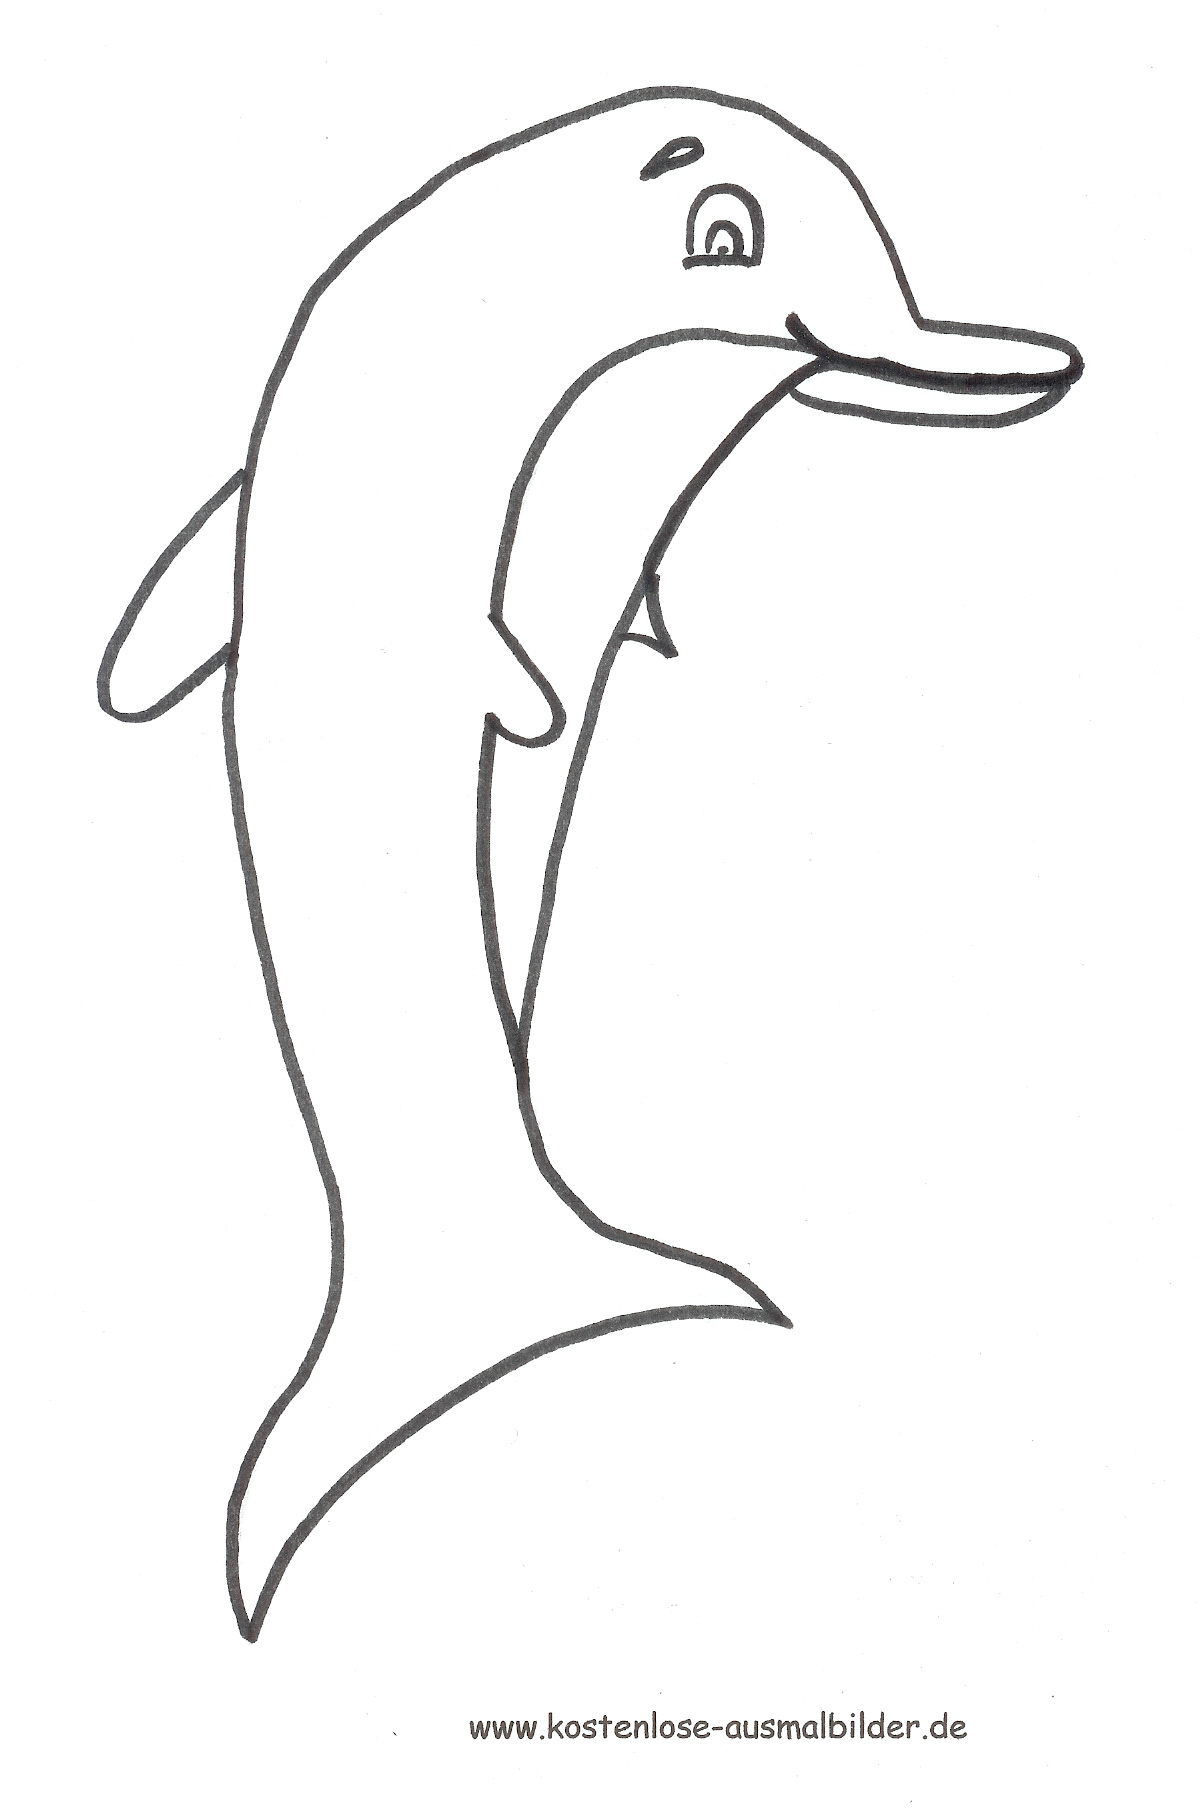 Ausmalbild Delfin Zum Ausdrucken ganzes Delfin Bilder Zum Ausmalen